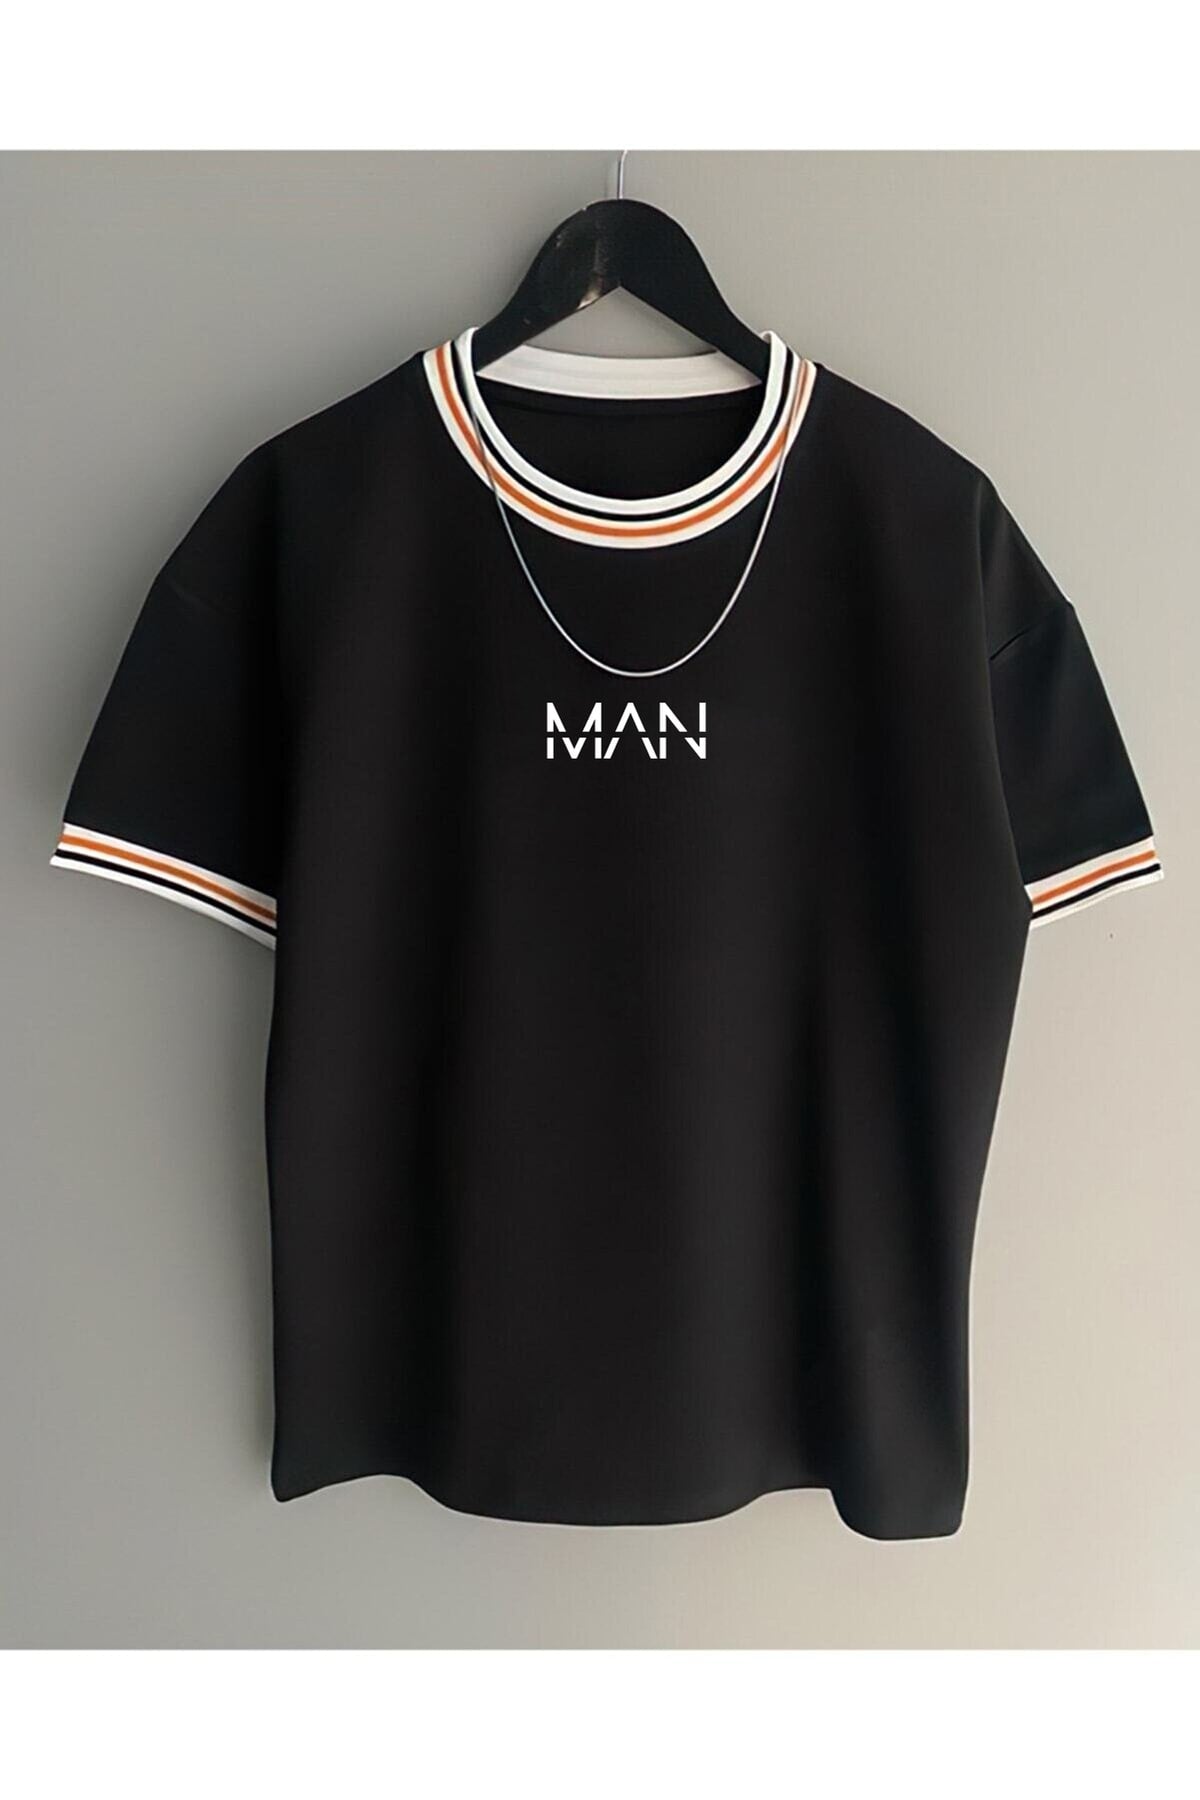 Men's New Season Oversize Man Fit Collar Detailed Summer T-shirt